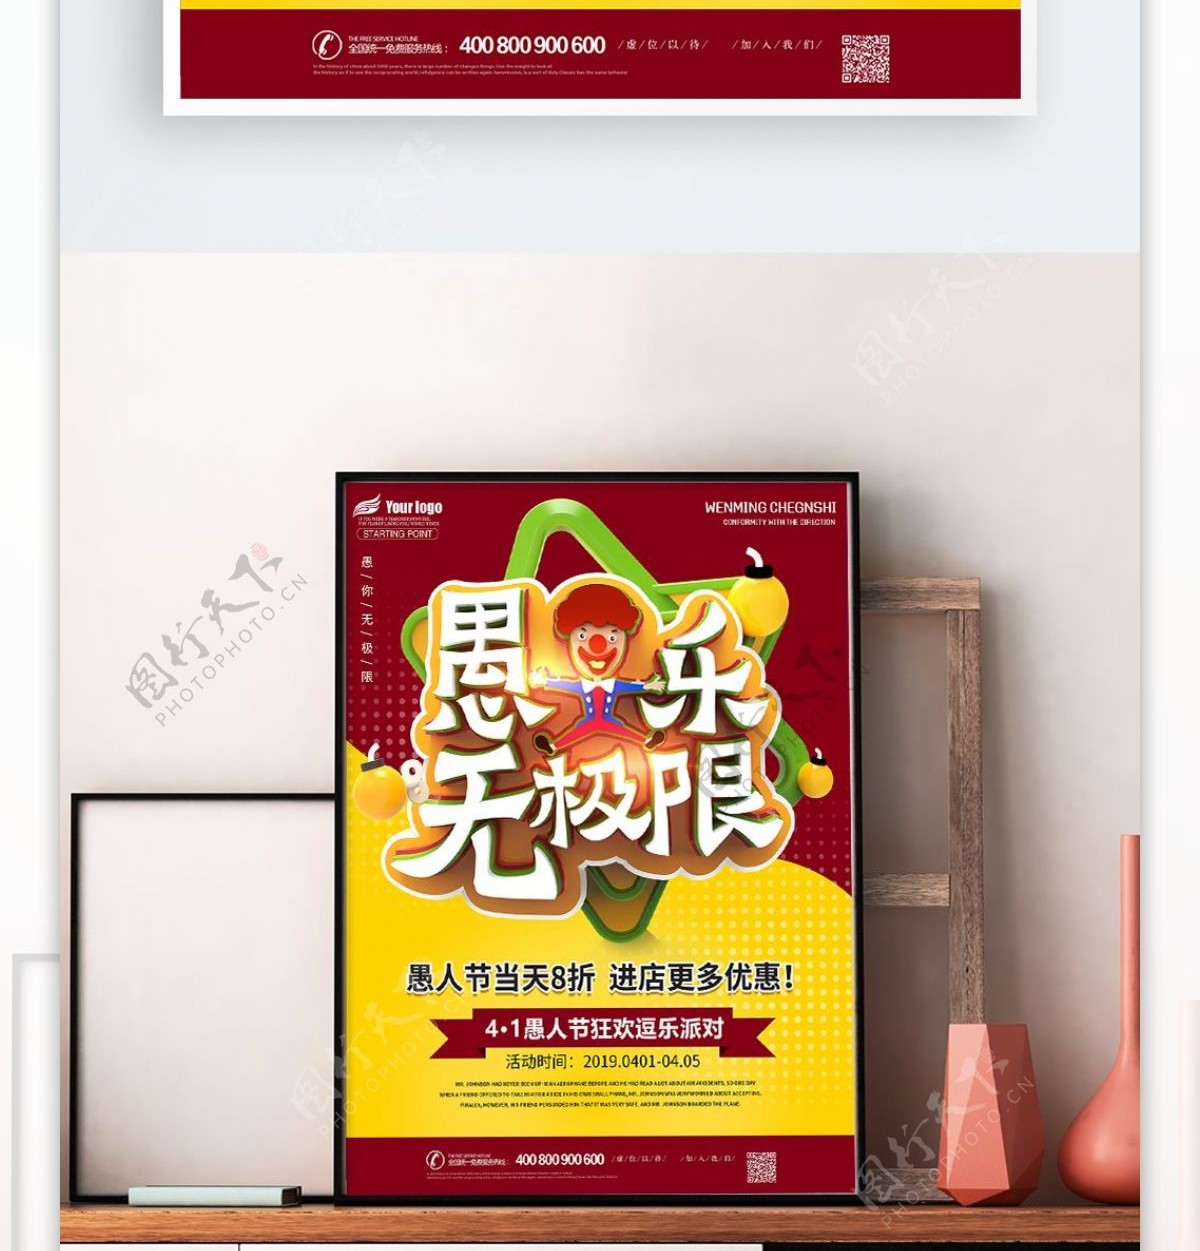 4月1日愚人节商场促销活动优惠海报